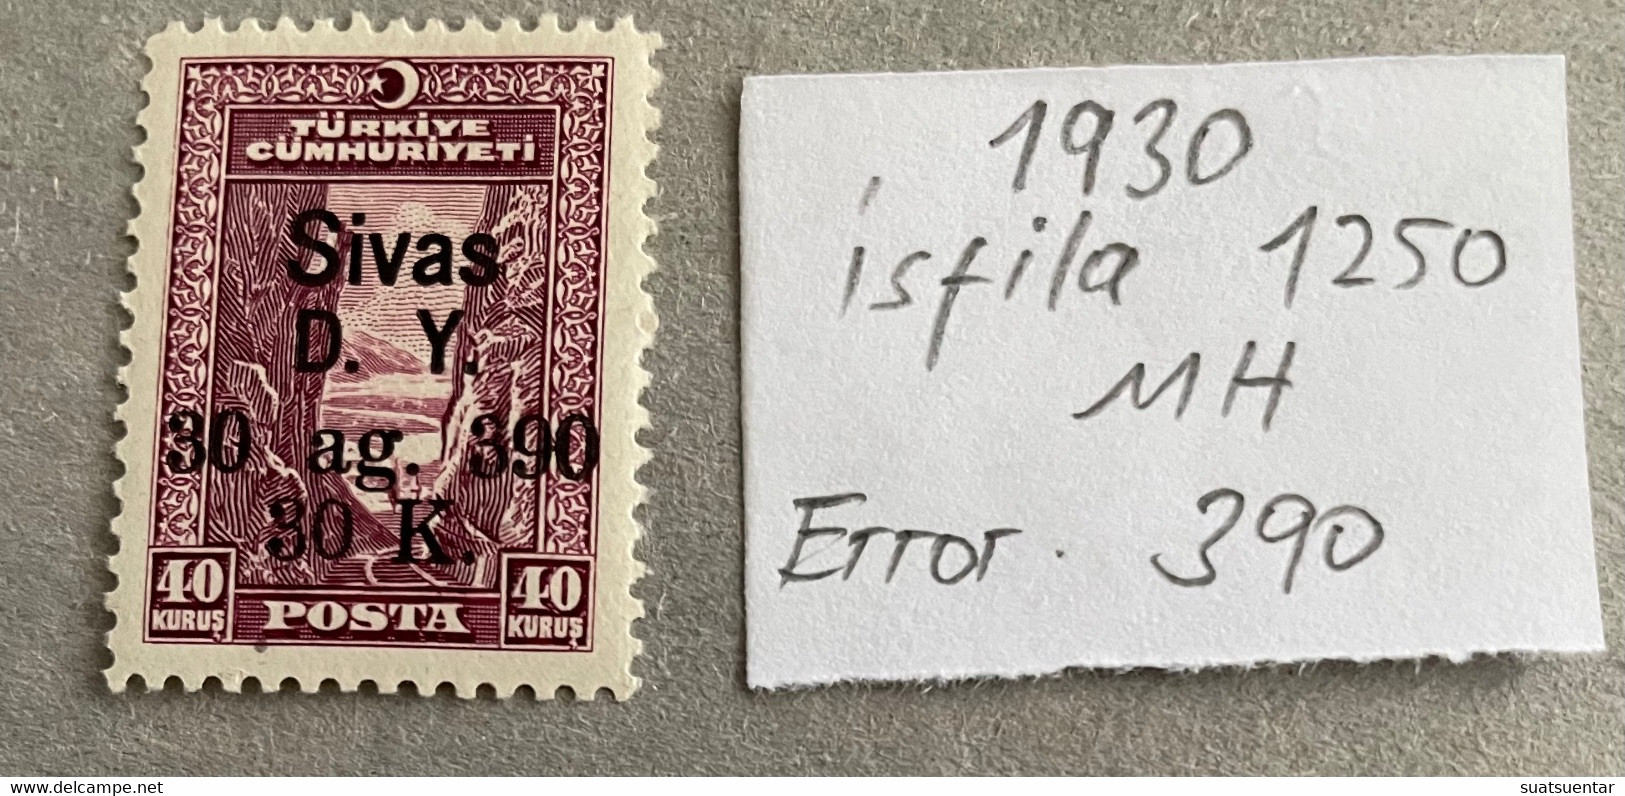 1930 Sivas-Ankara Railway Stamps Error   390 MH Isfila 1250 - Ungebraucht